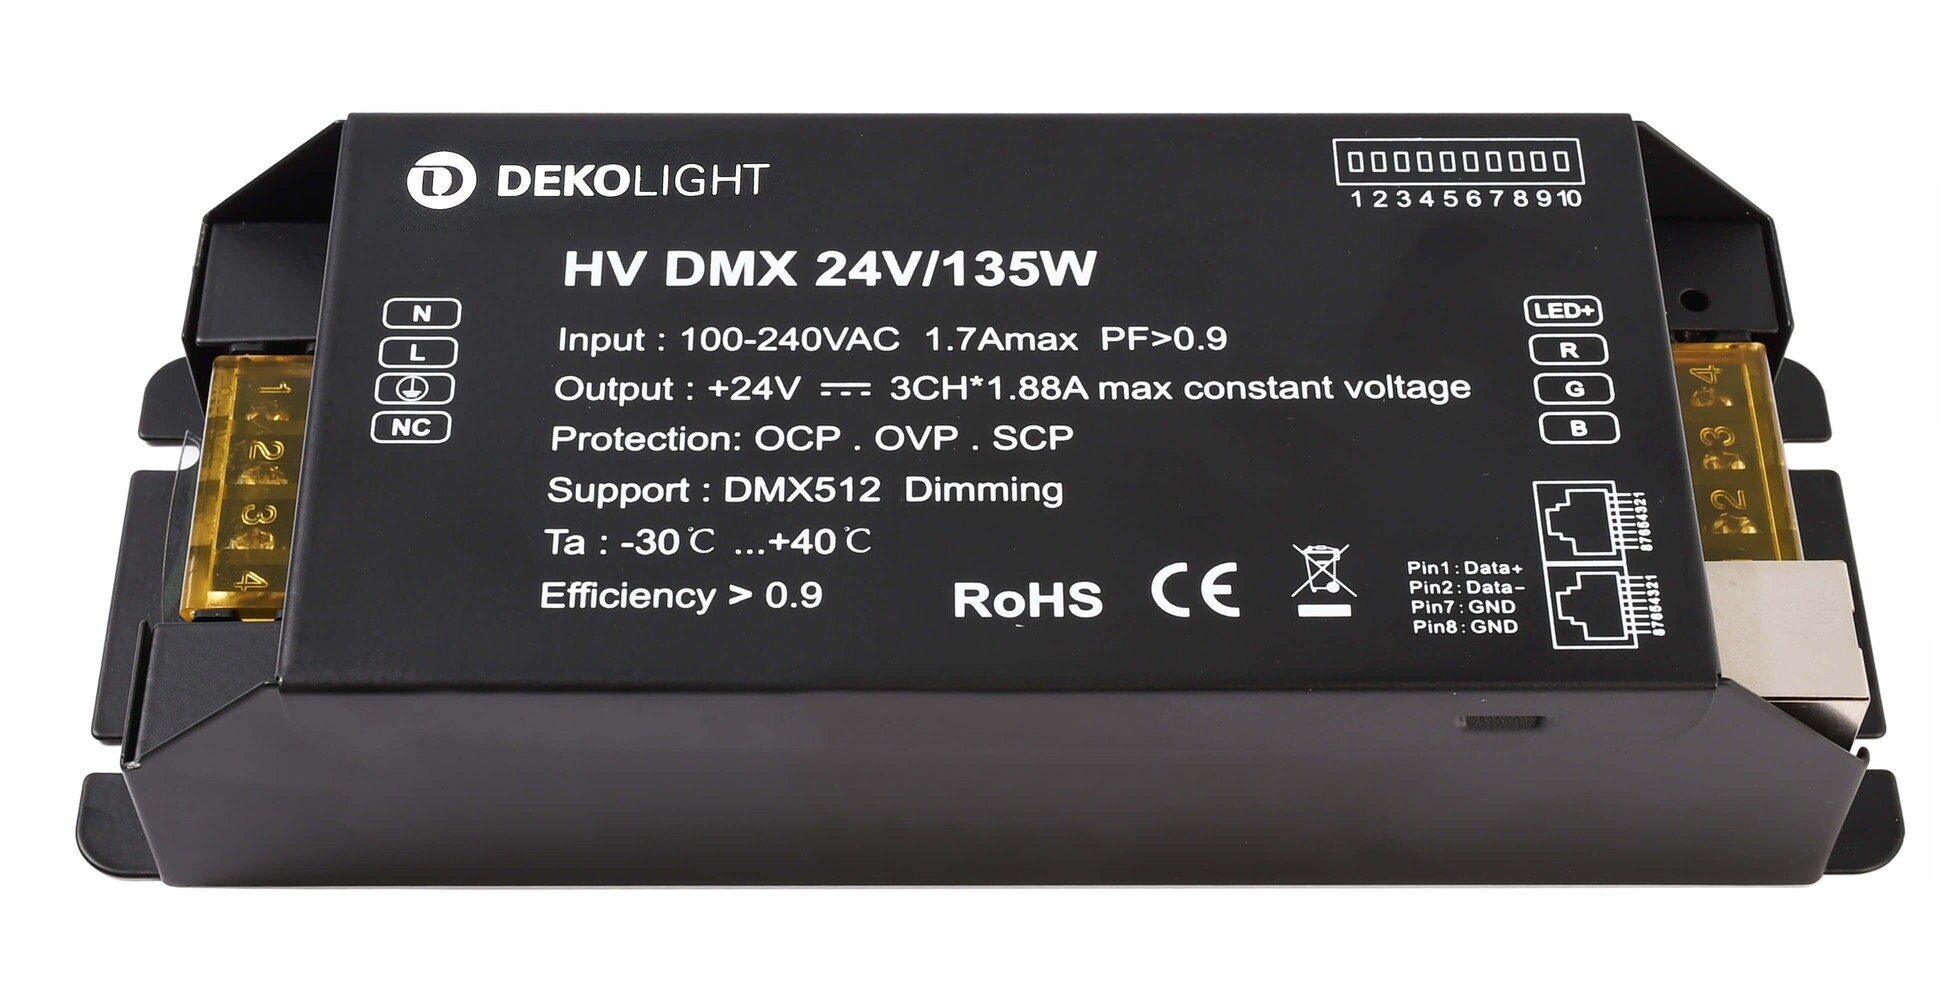 Hochwertiges LED Netzteil von der Marke Deko-Light, spannungskonstant und dimmbar